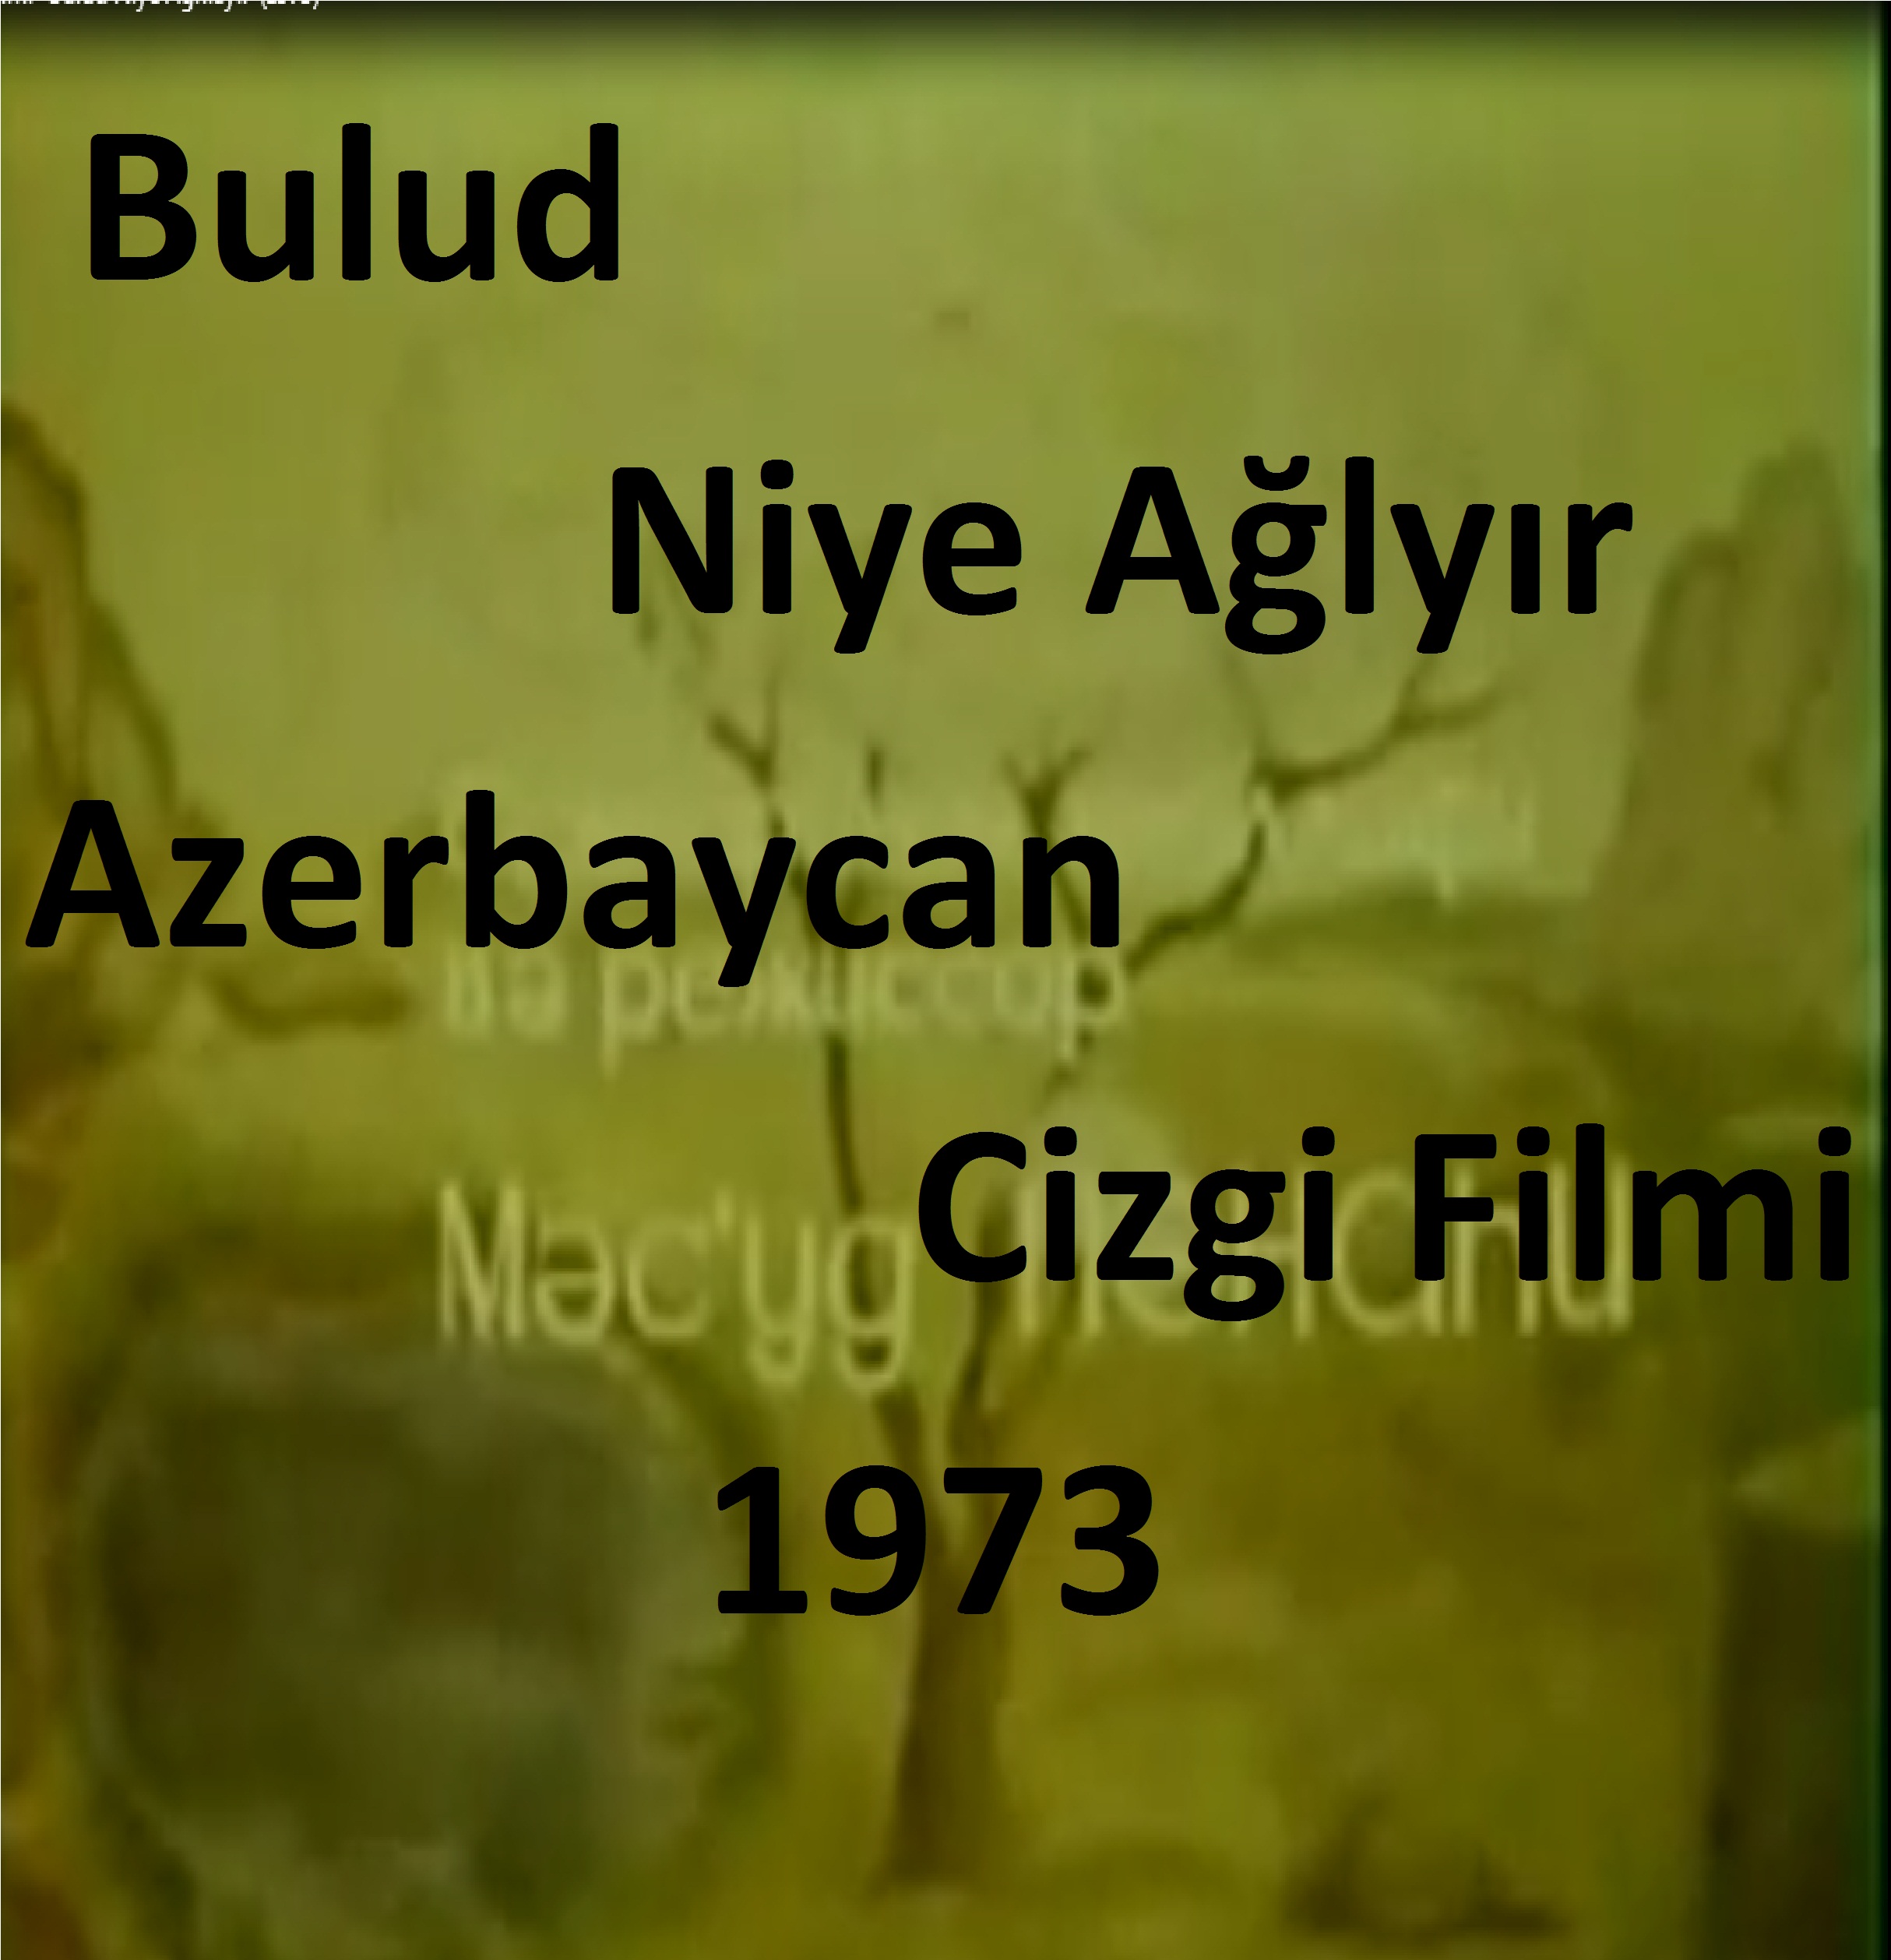 Bulud Niye Ağlayır-Azerbaycan Cizgi Filmi-1973